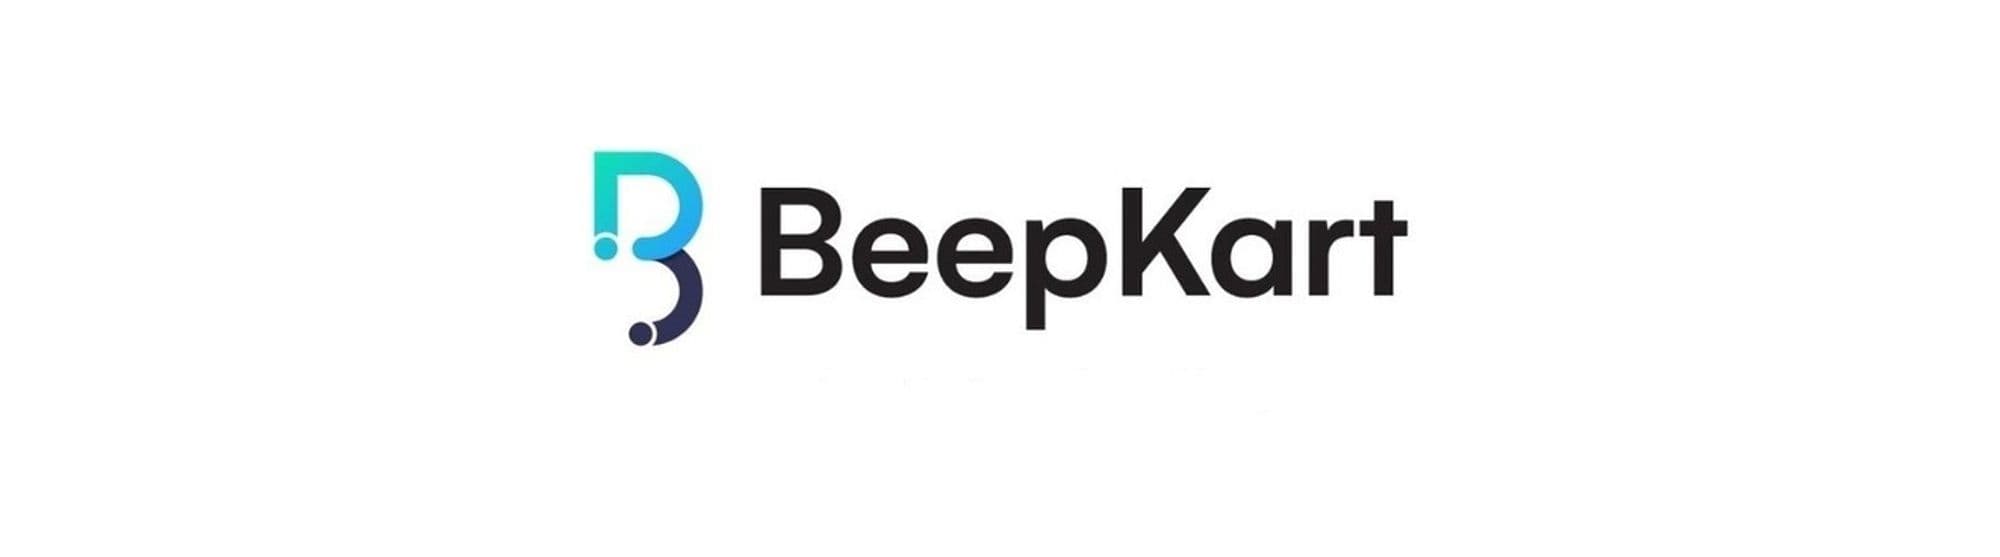 BeepKart Cover Image